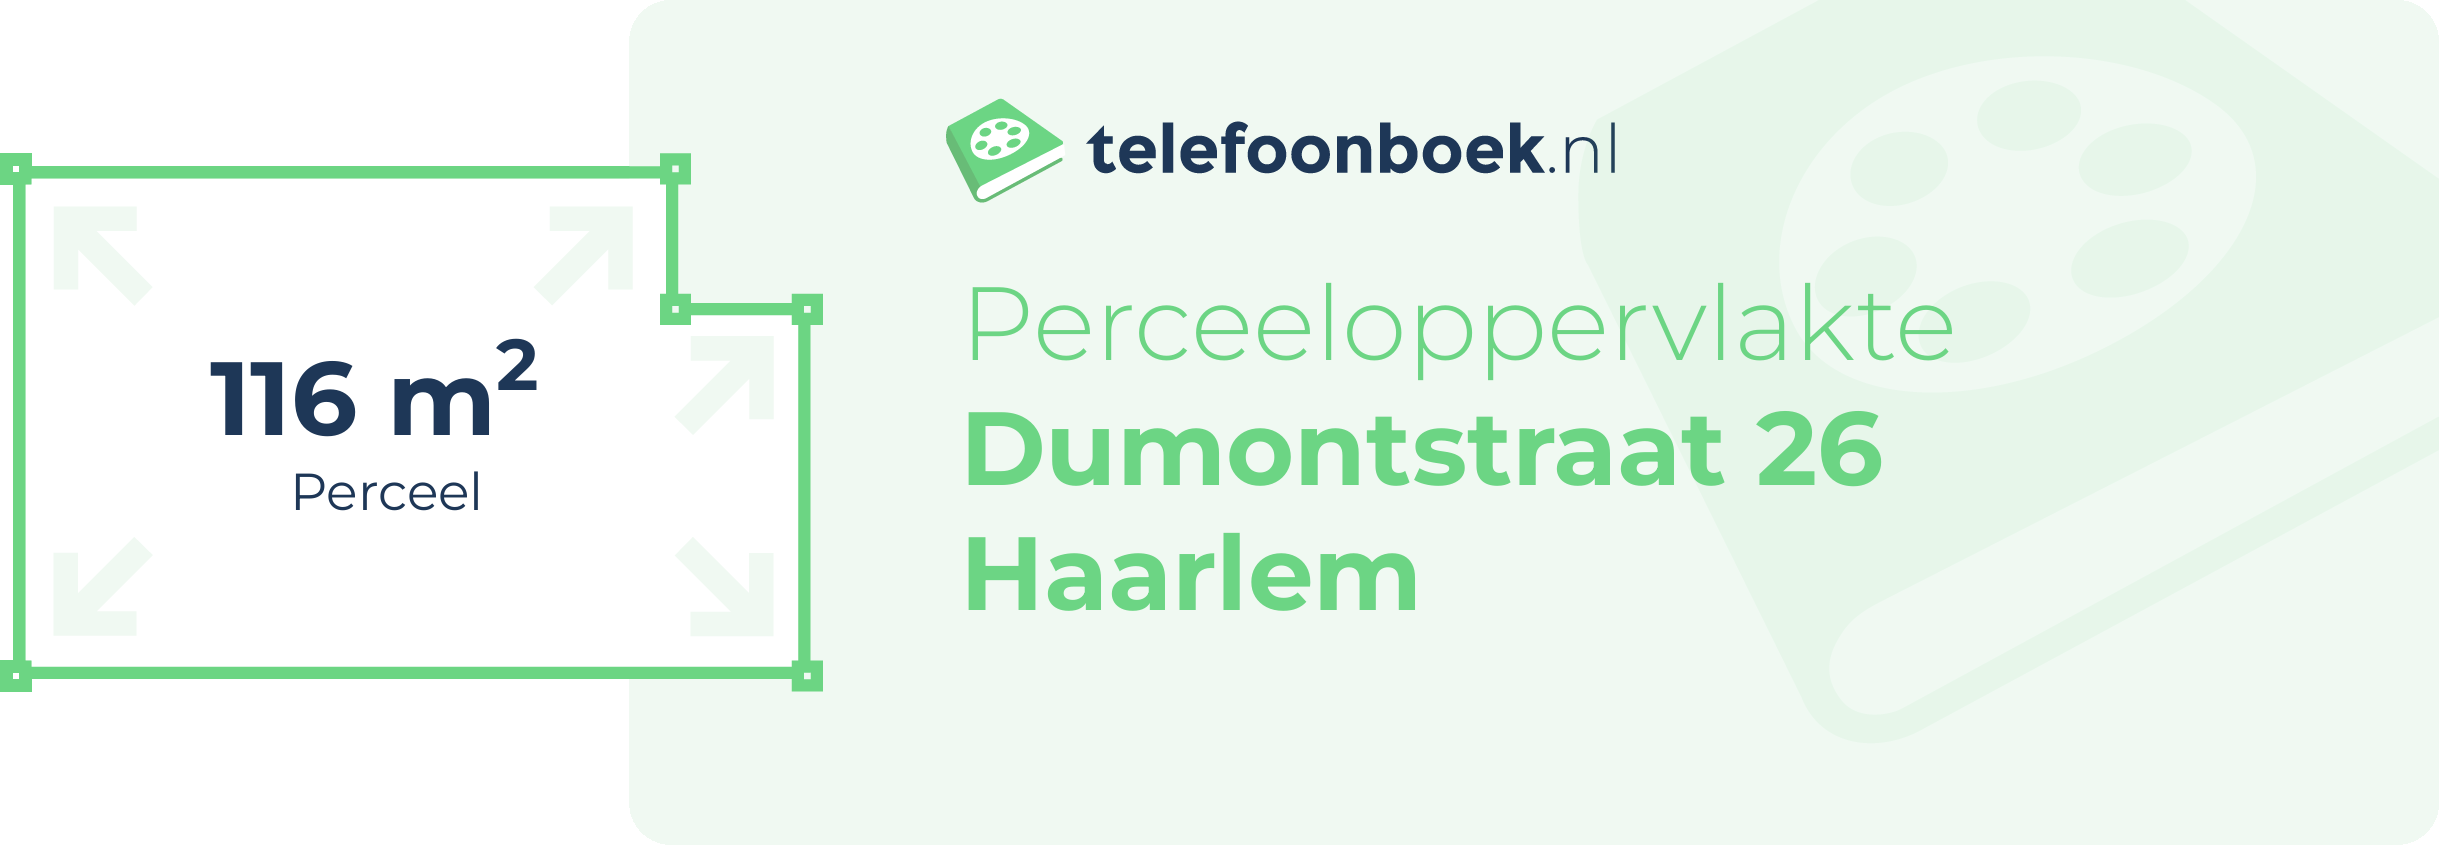 Perceeloppervlakte Dumontstraat 26 Haarlem